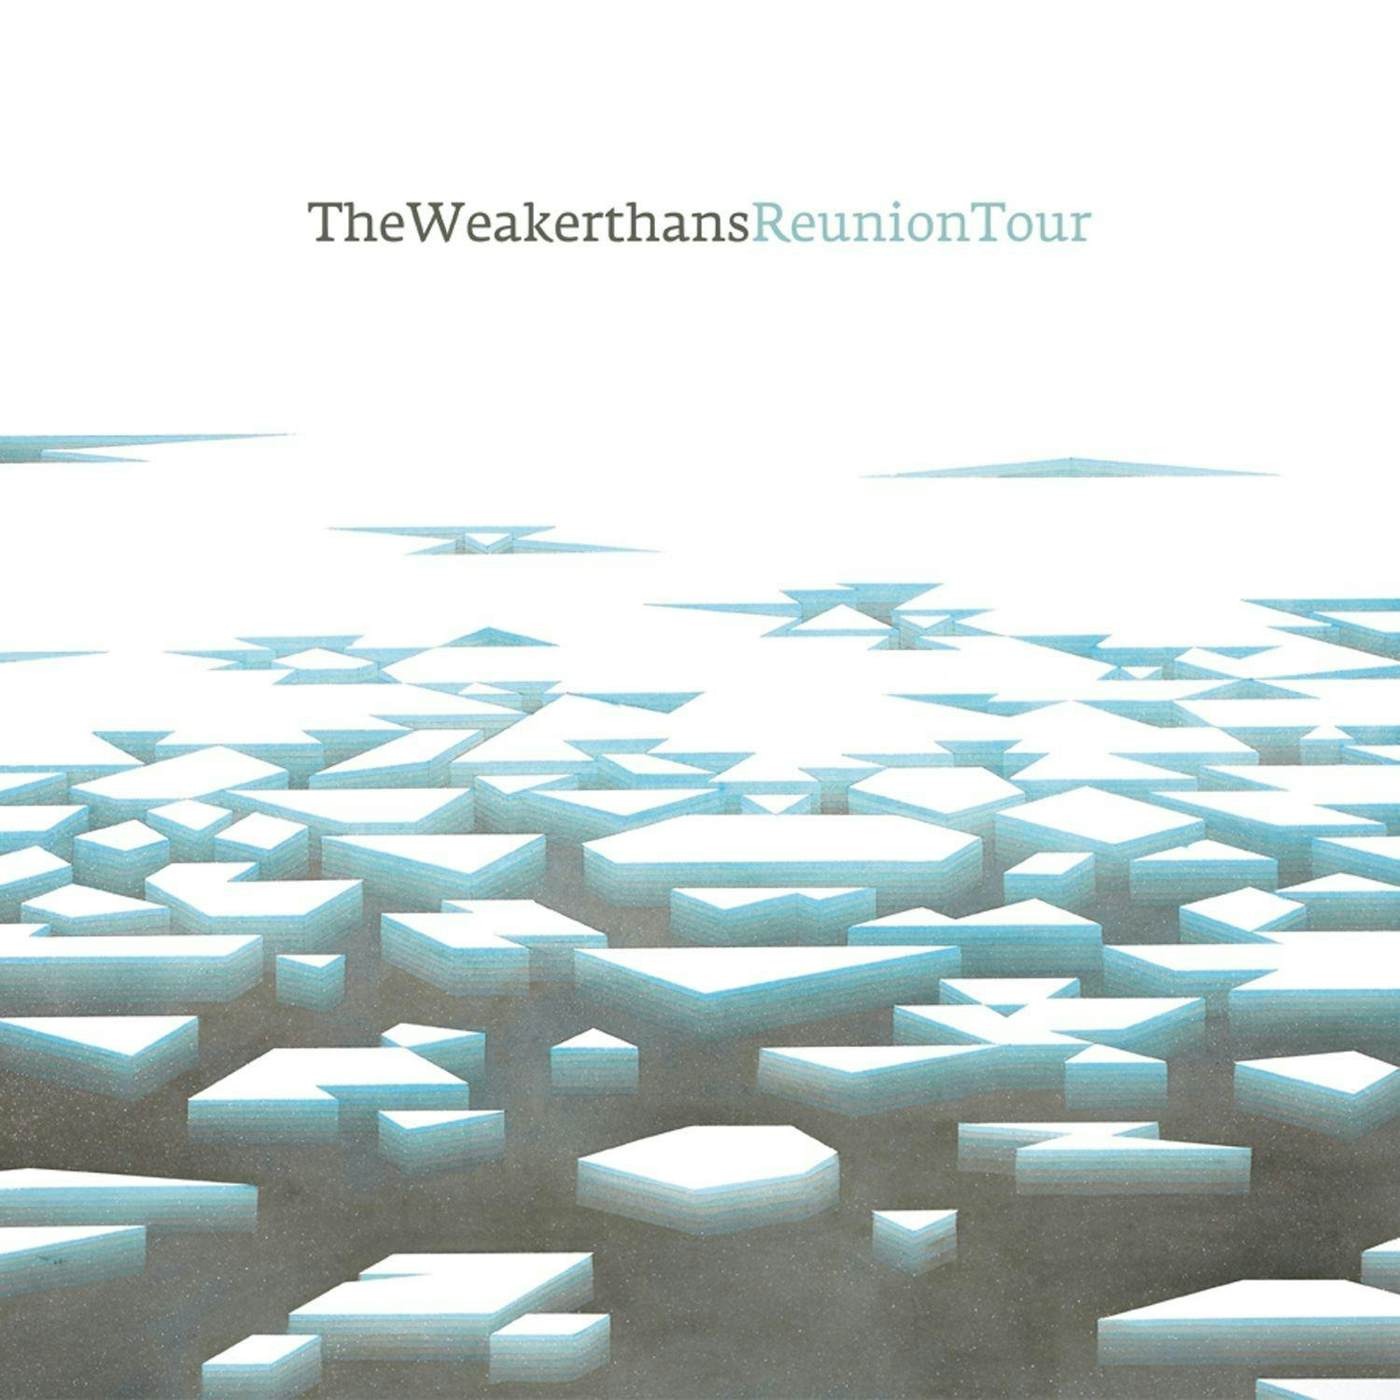 The Weakerthans Reunion Tour Vinyl Record